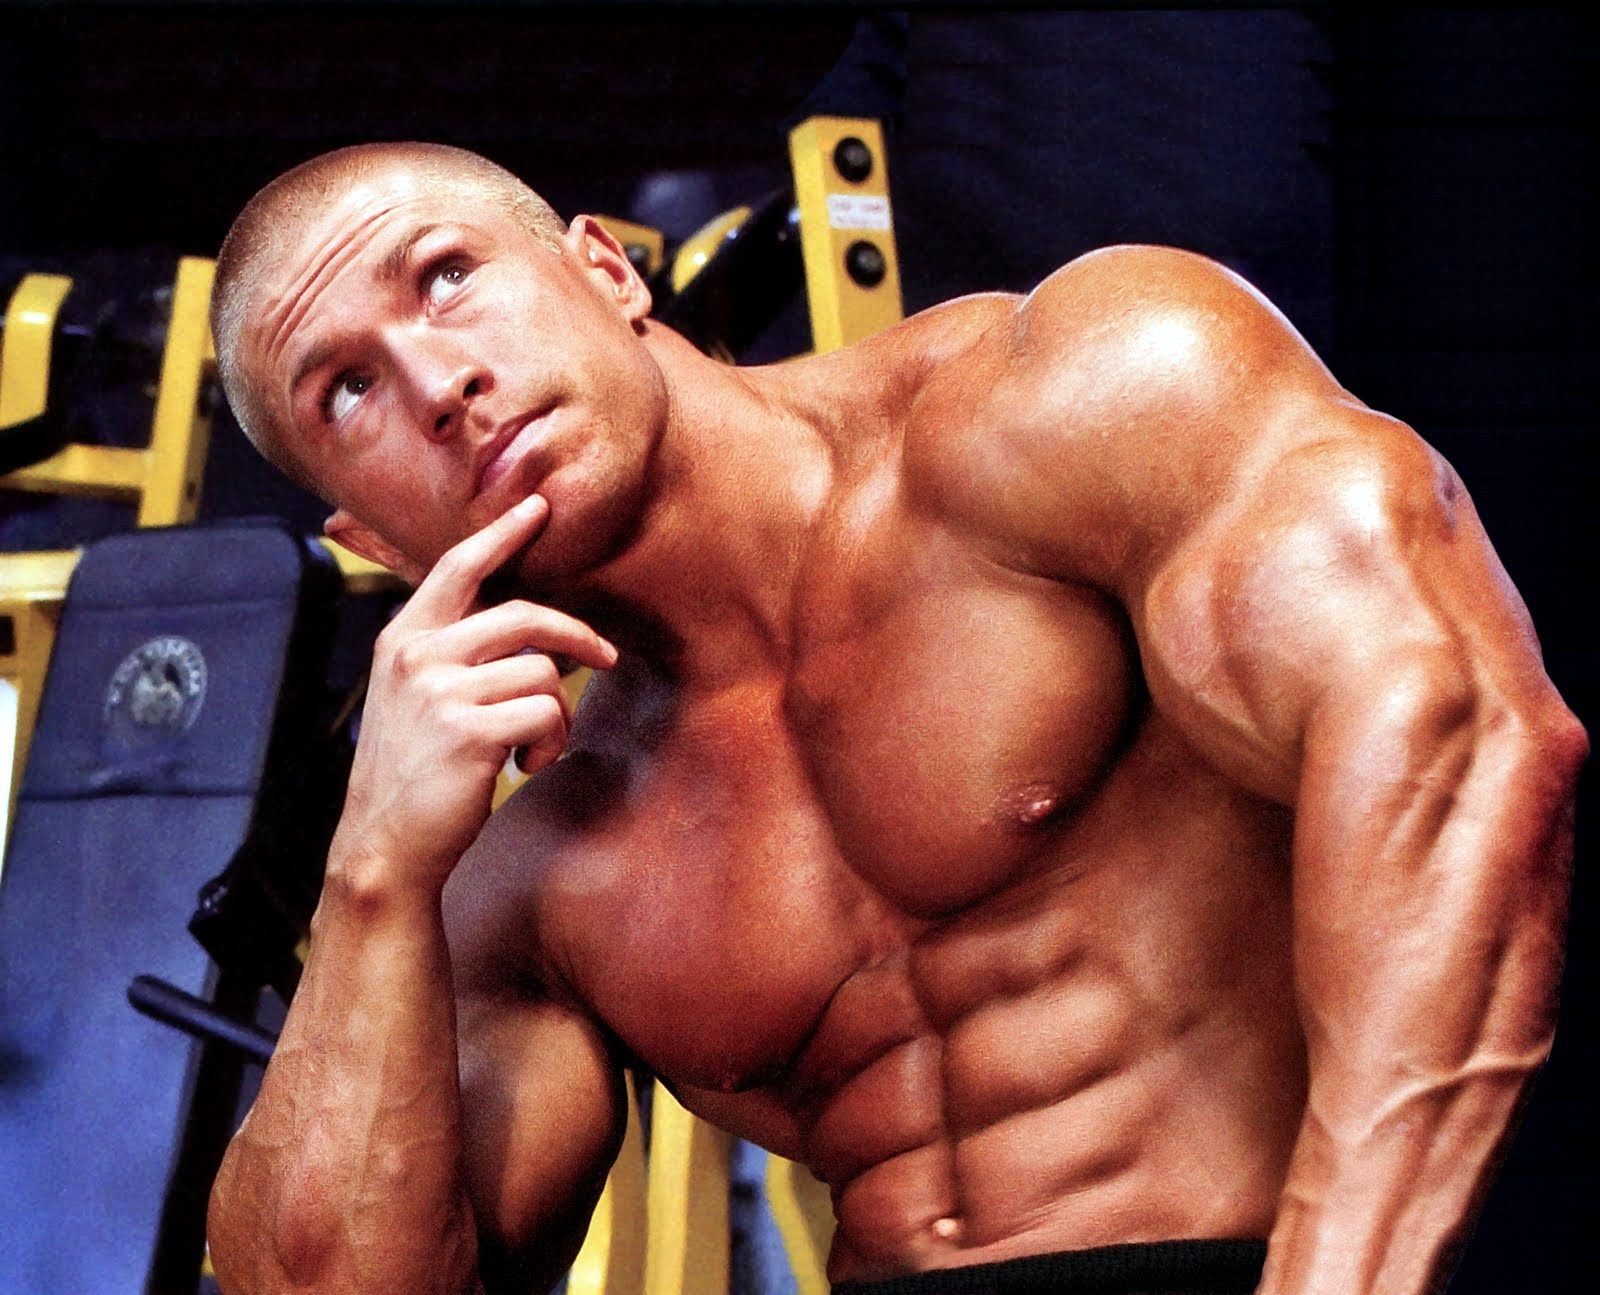 Bodybuilding Steroids Secrets March 2015